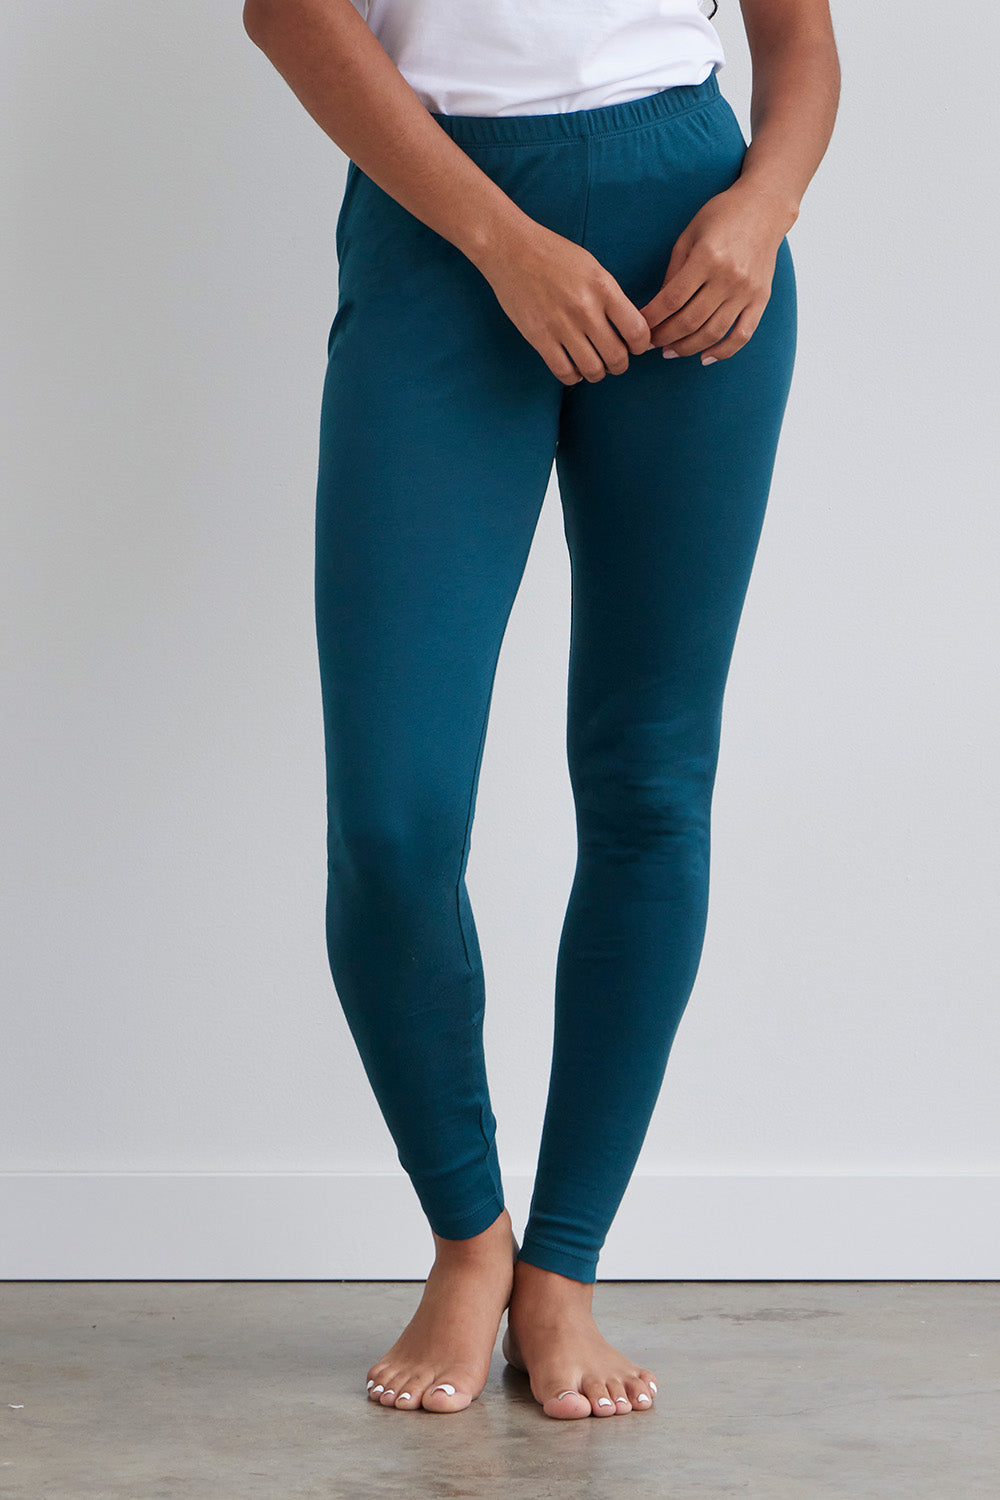 Leggings - High waist, slimline - Bamboo, organic cotton leggings- Light  blue